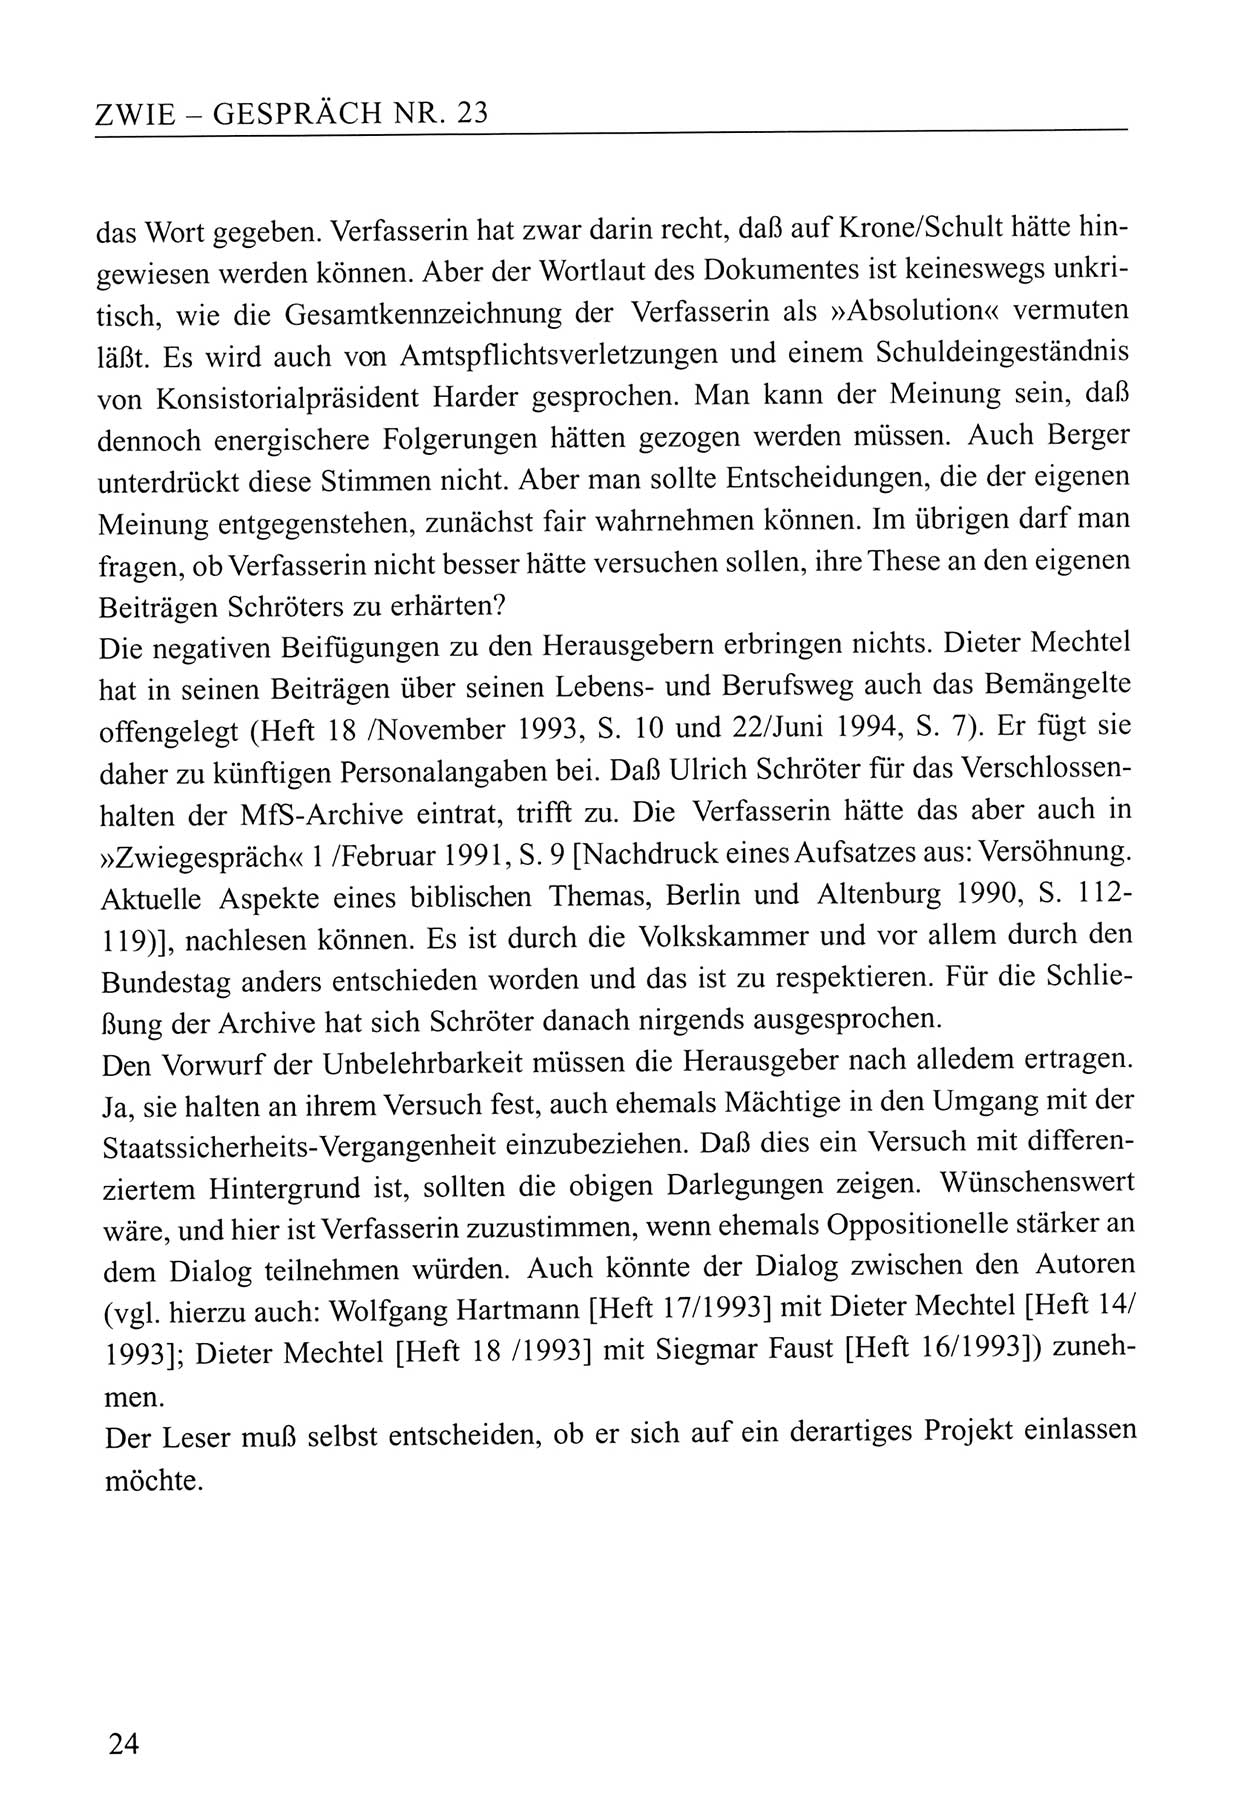 Zwie-Gespräch, Beiträge zum Umgang mit der Staatssicherheits-Vergangenheit [Deutsche Demokratische Republik (DDR)], Ausgabe Nr. 23, Berlin 1994, Seite 24 (Zwie-Gespr. Ausg. 23 1994, S. 24)